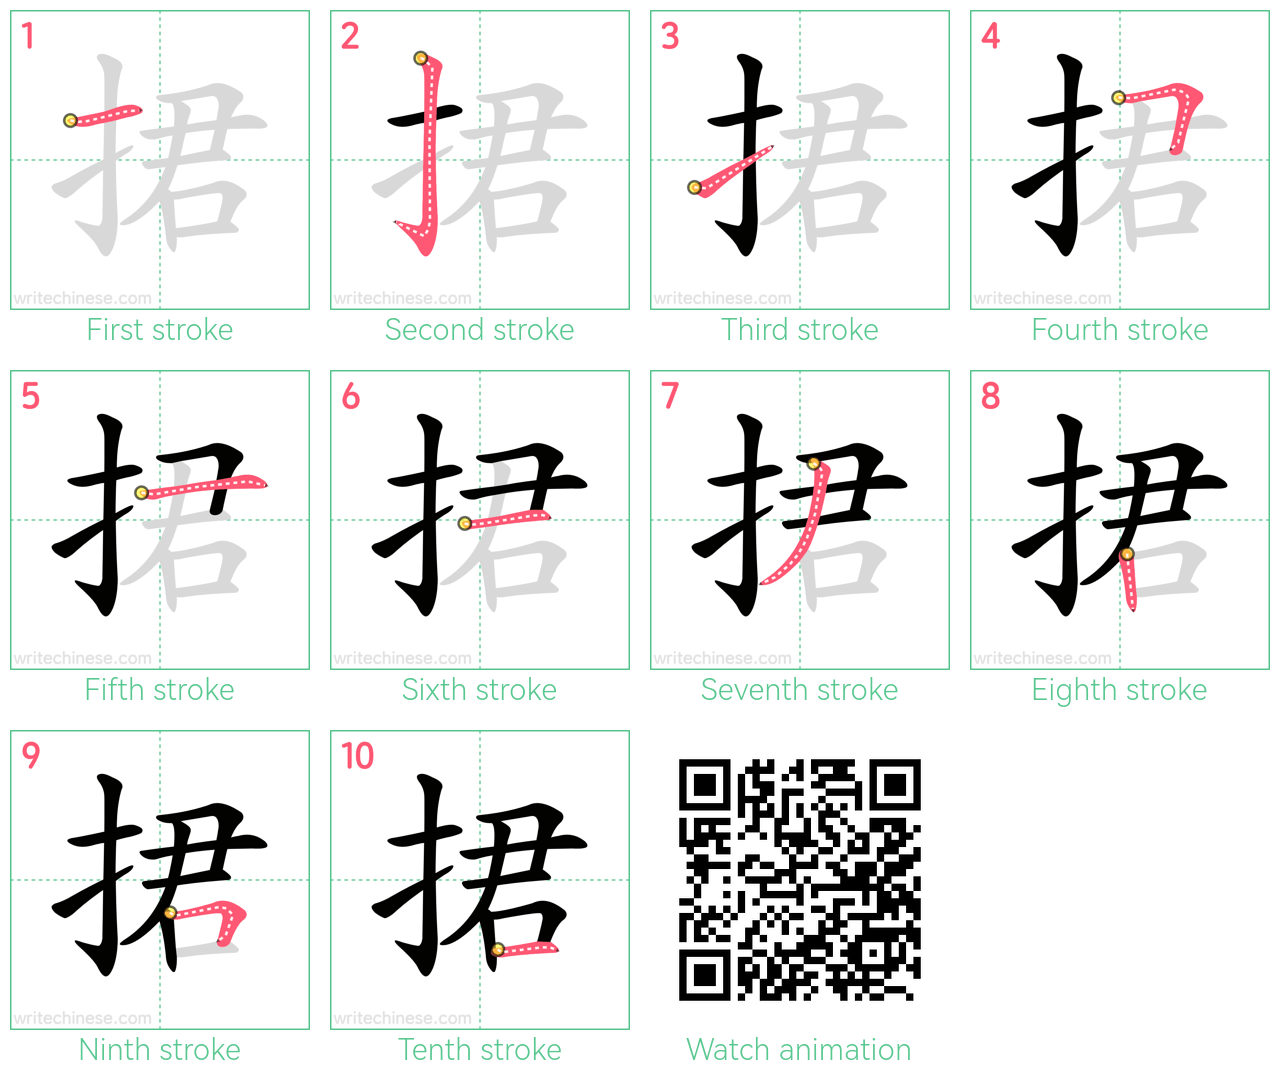 捃 step-by-step stroke order diagrams